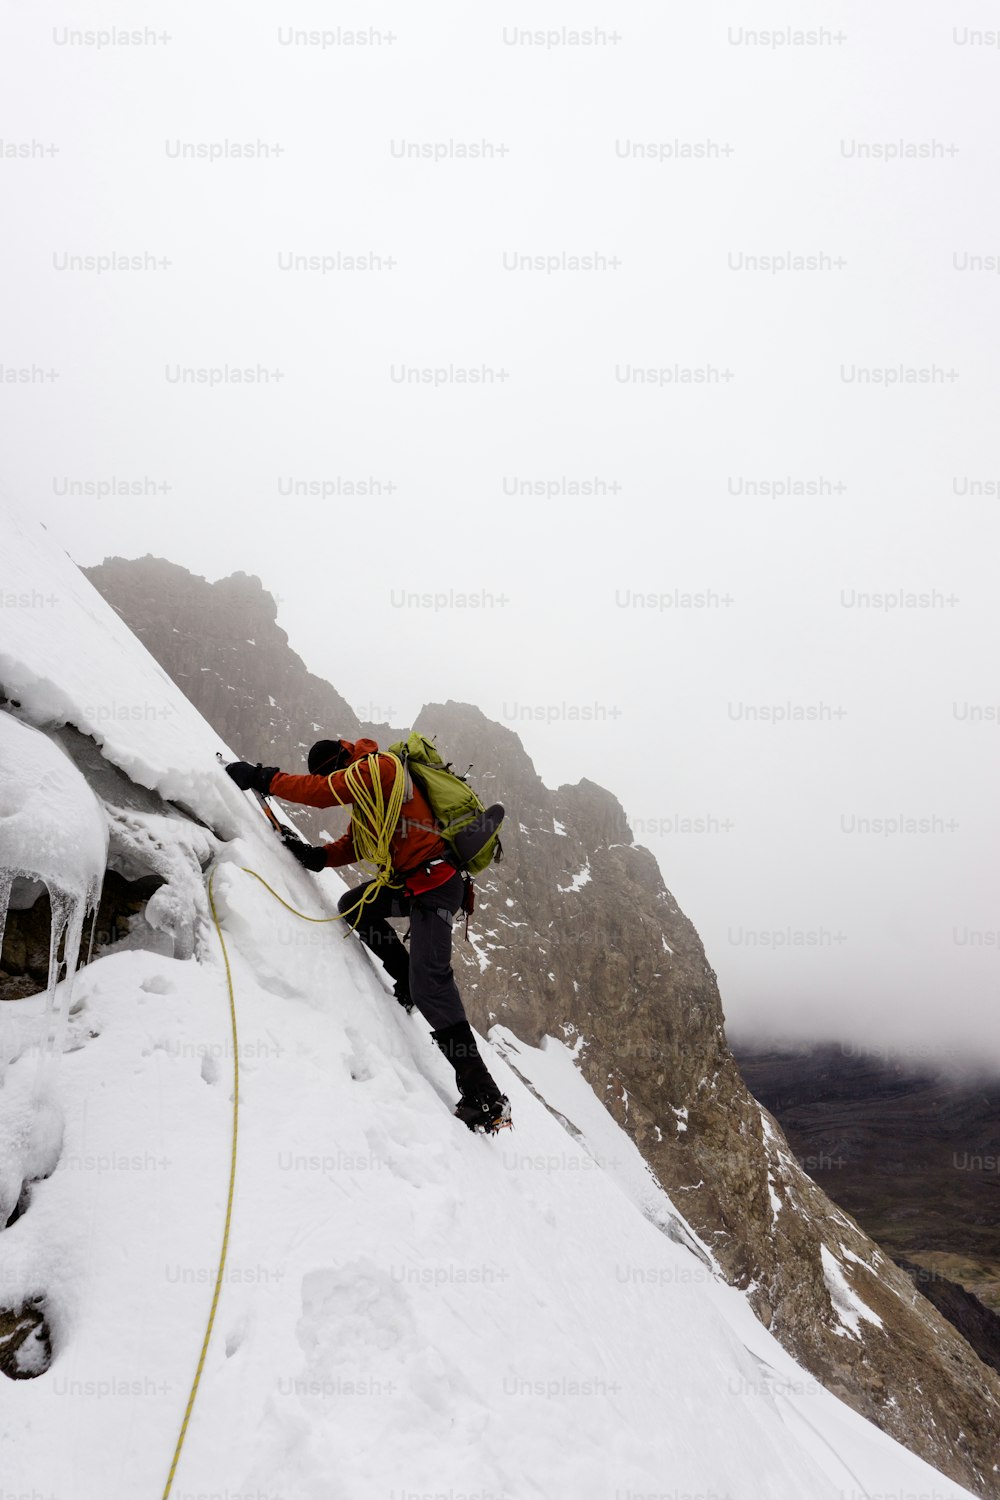 Escalador de montaña masculino con una chaqueta roja escalando un glaciar empinado y peligroso en la Cordillera Blanca en los Andes en Perú